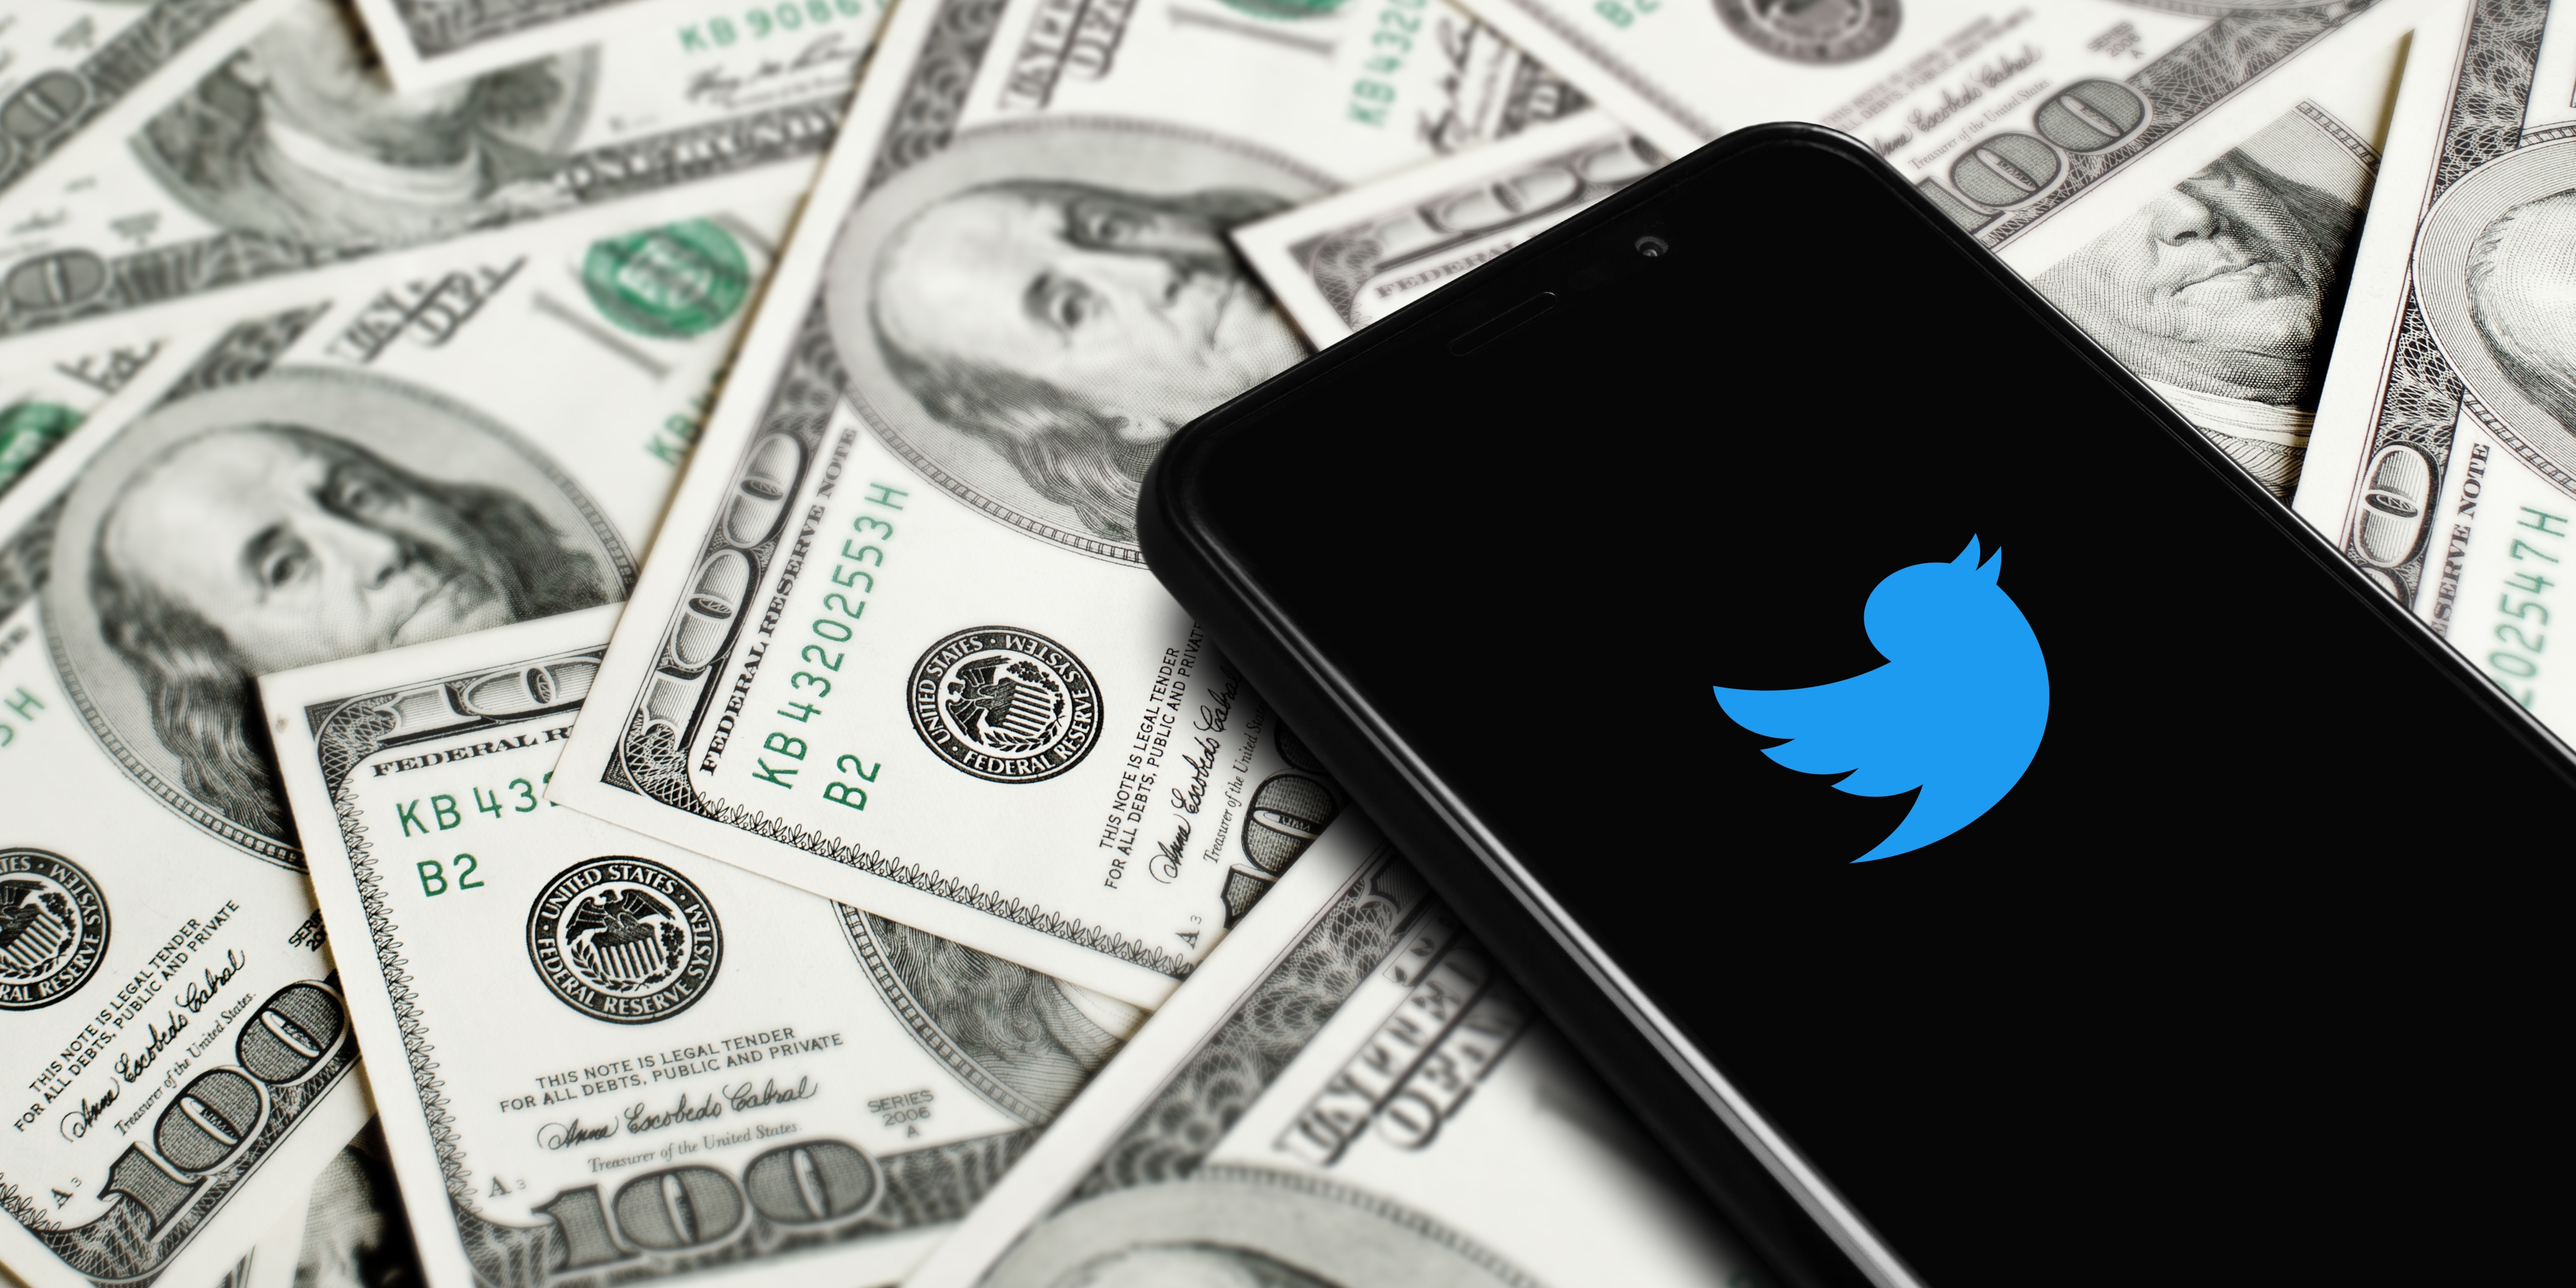 Twitterのロゴが映ったスマートフォンがドル紙幣の上に置かれている。